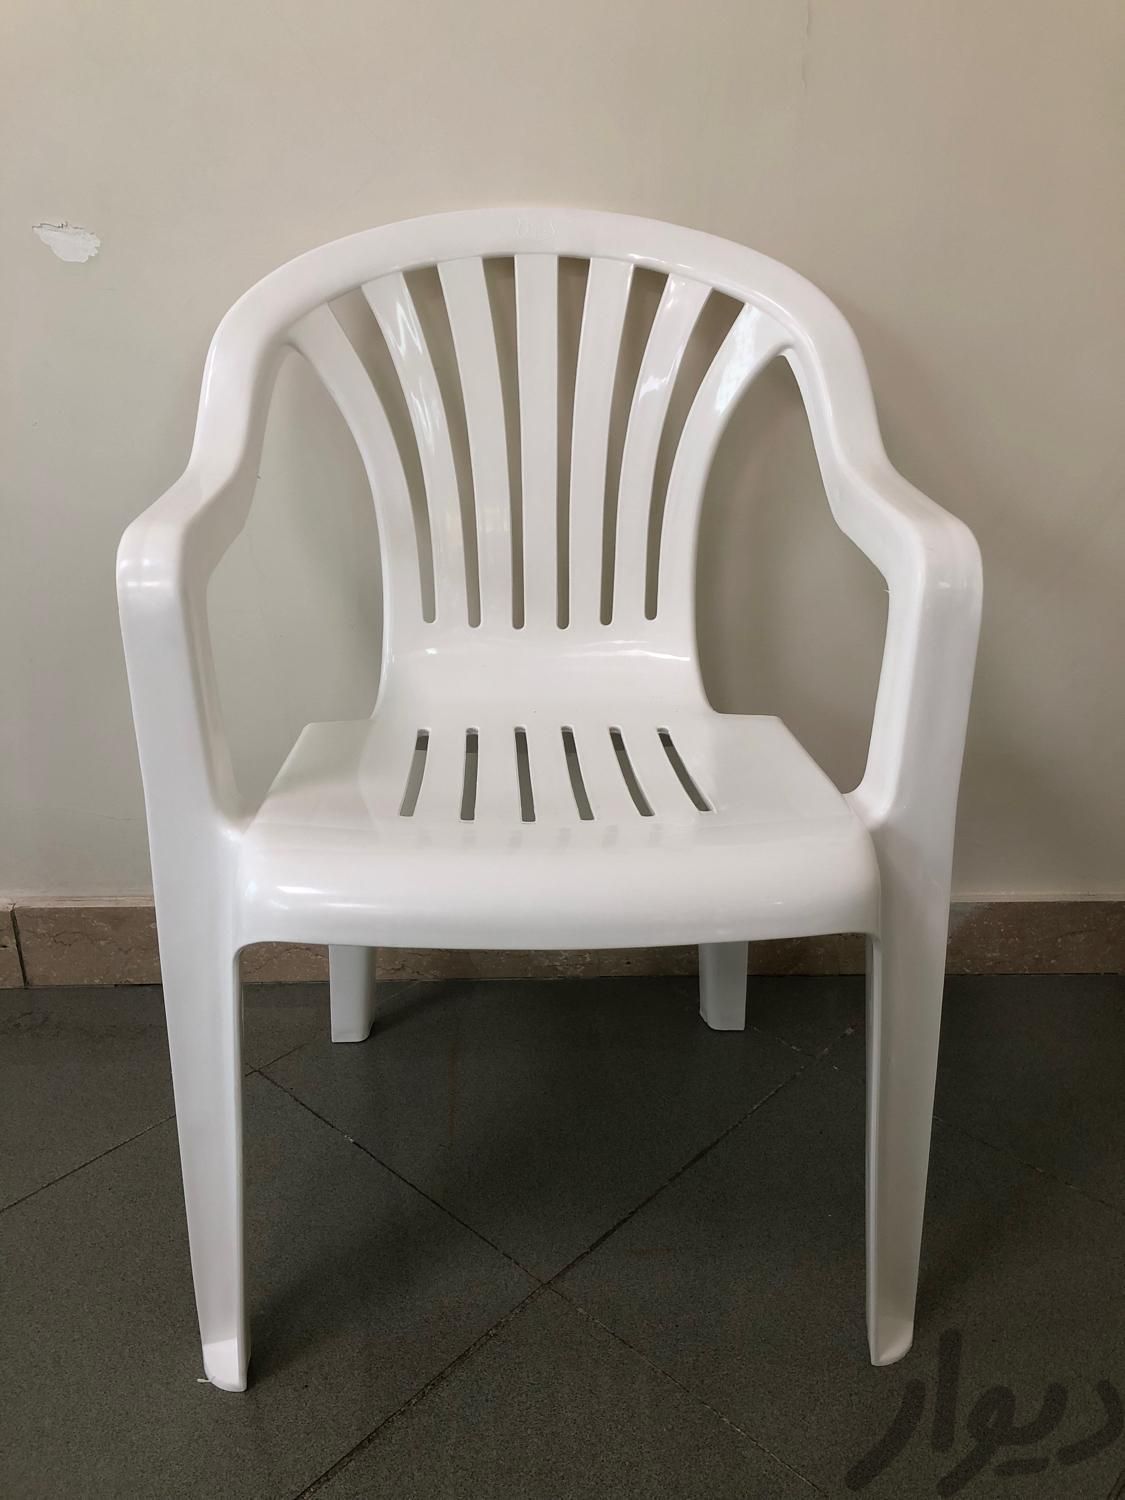 صندلی پلاستیکی کد ۵۰۱ صبا با وزن حدودا ۲۶۰۰|میز و صندلی غذاخوری|تهران, اتحاد|دیوار